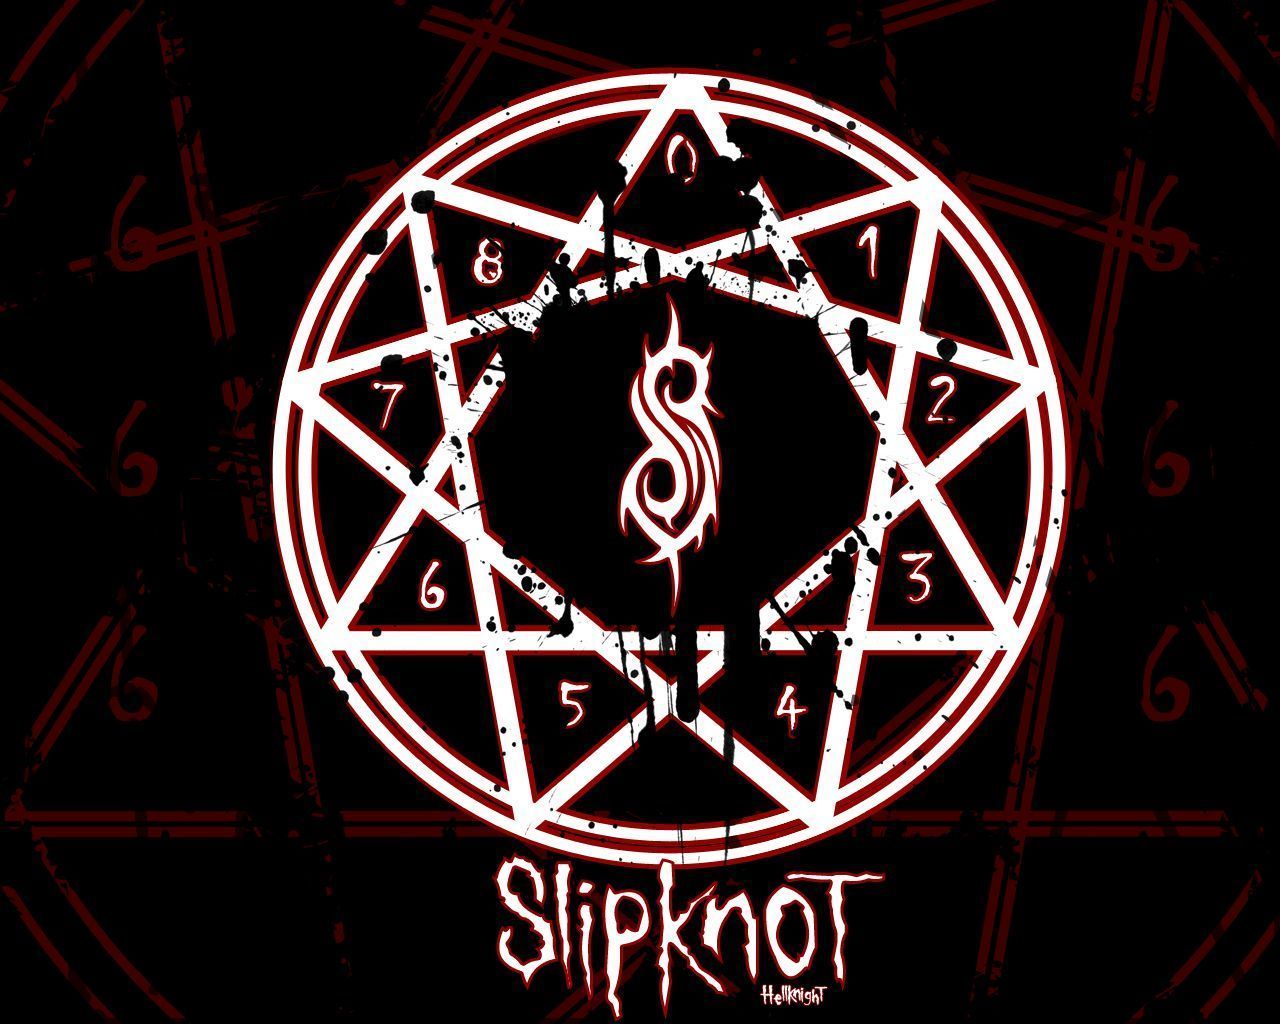 Slipknot Computer Wallpapers, Desktop Backgrounds 1280x1024 ID